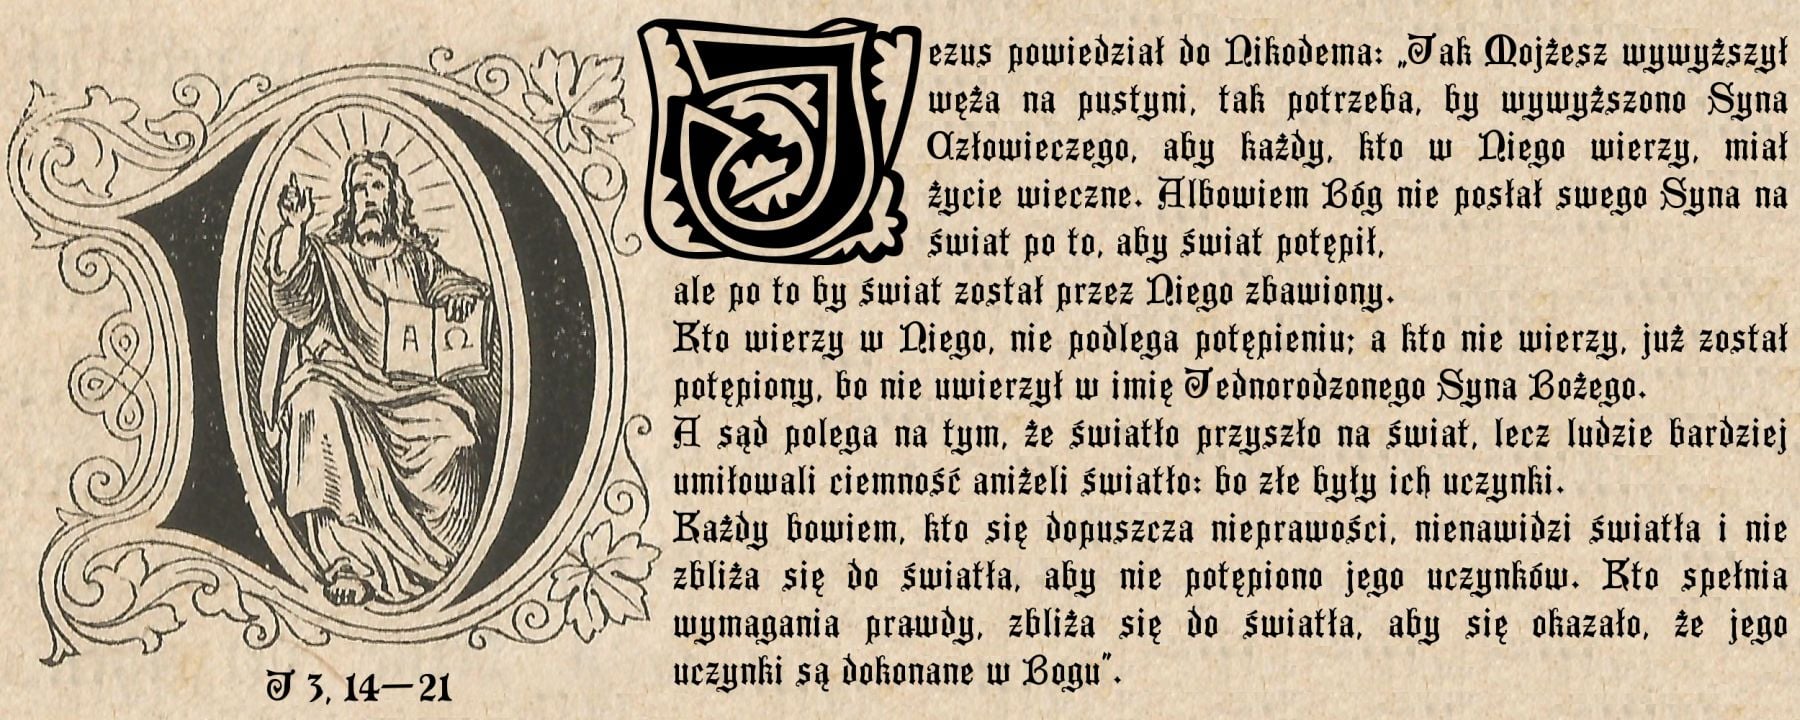 IV Niedziela Wielkiego Postu ze św. Janem Pawłem II – 15.03.2015r.